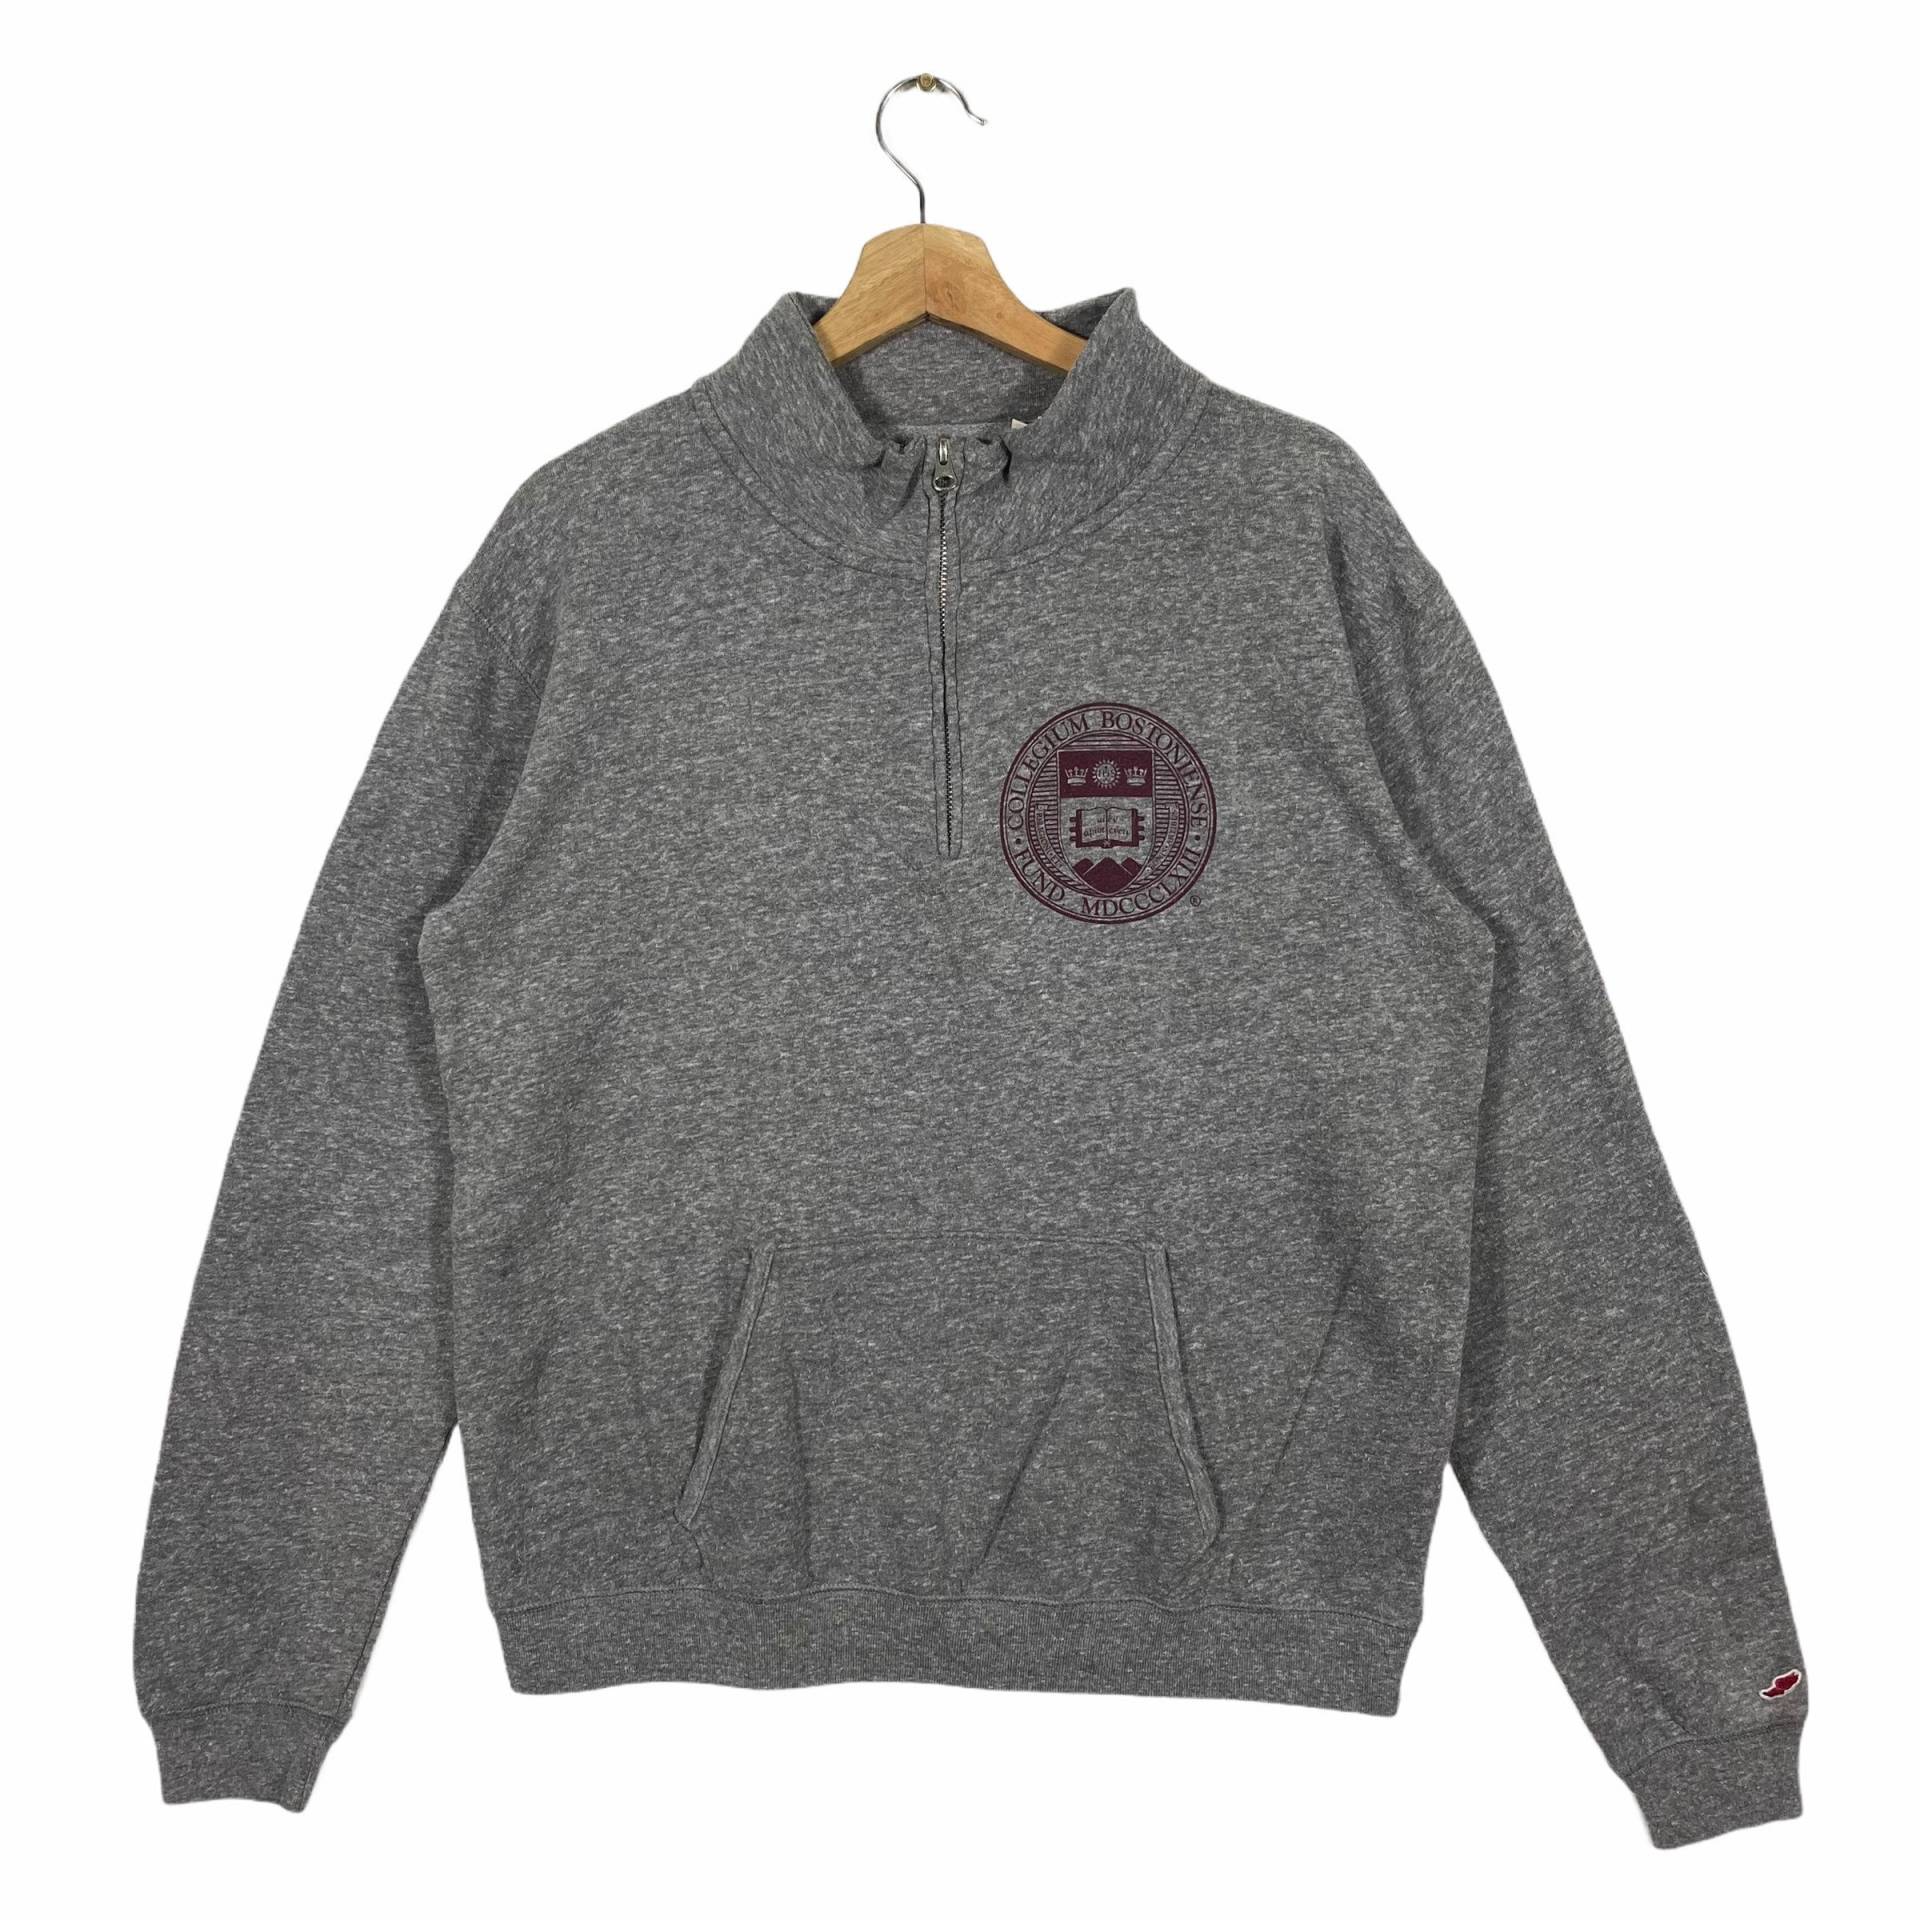 Vintage Boston College Half Zip Sweatshirt L Size But Fit To M Größe Grau Farbe von DAMBROWNByDAM